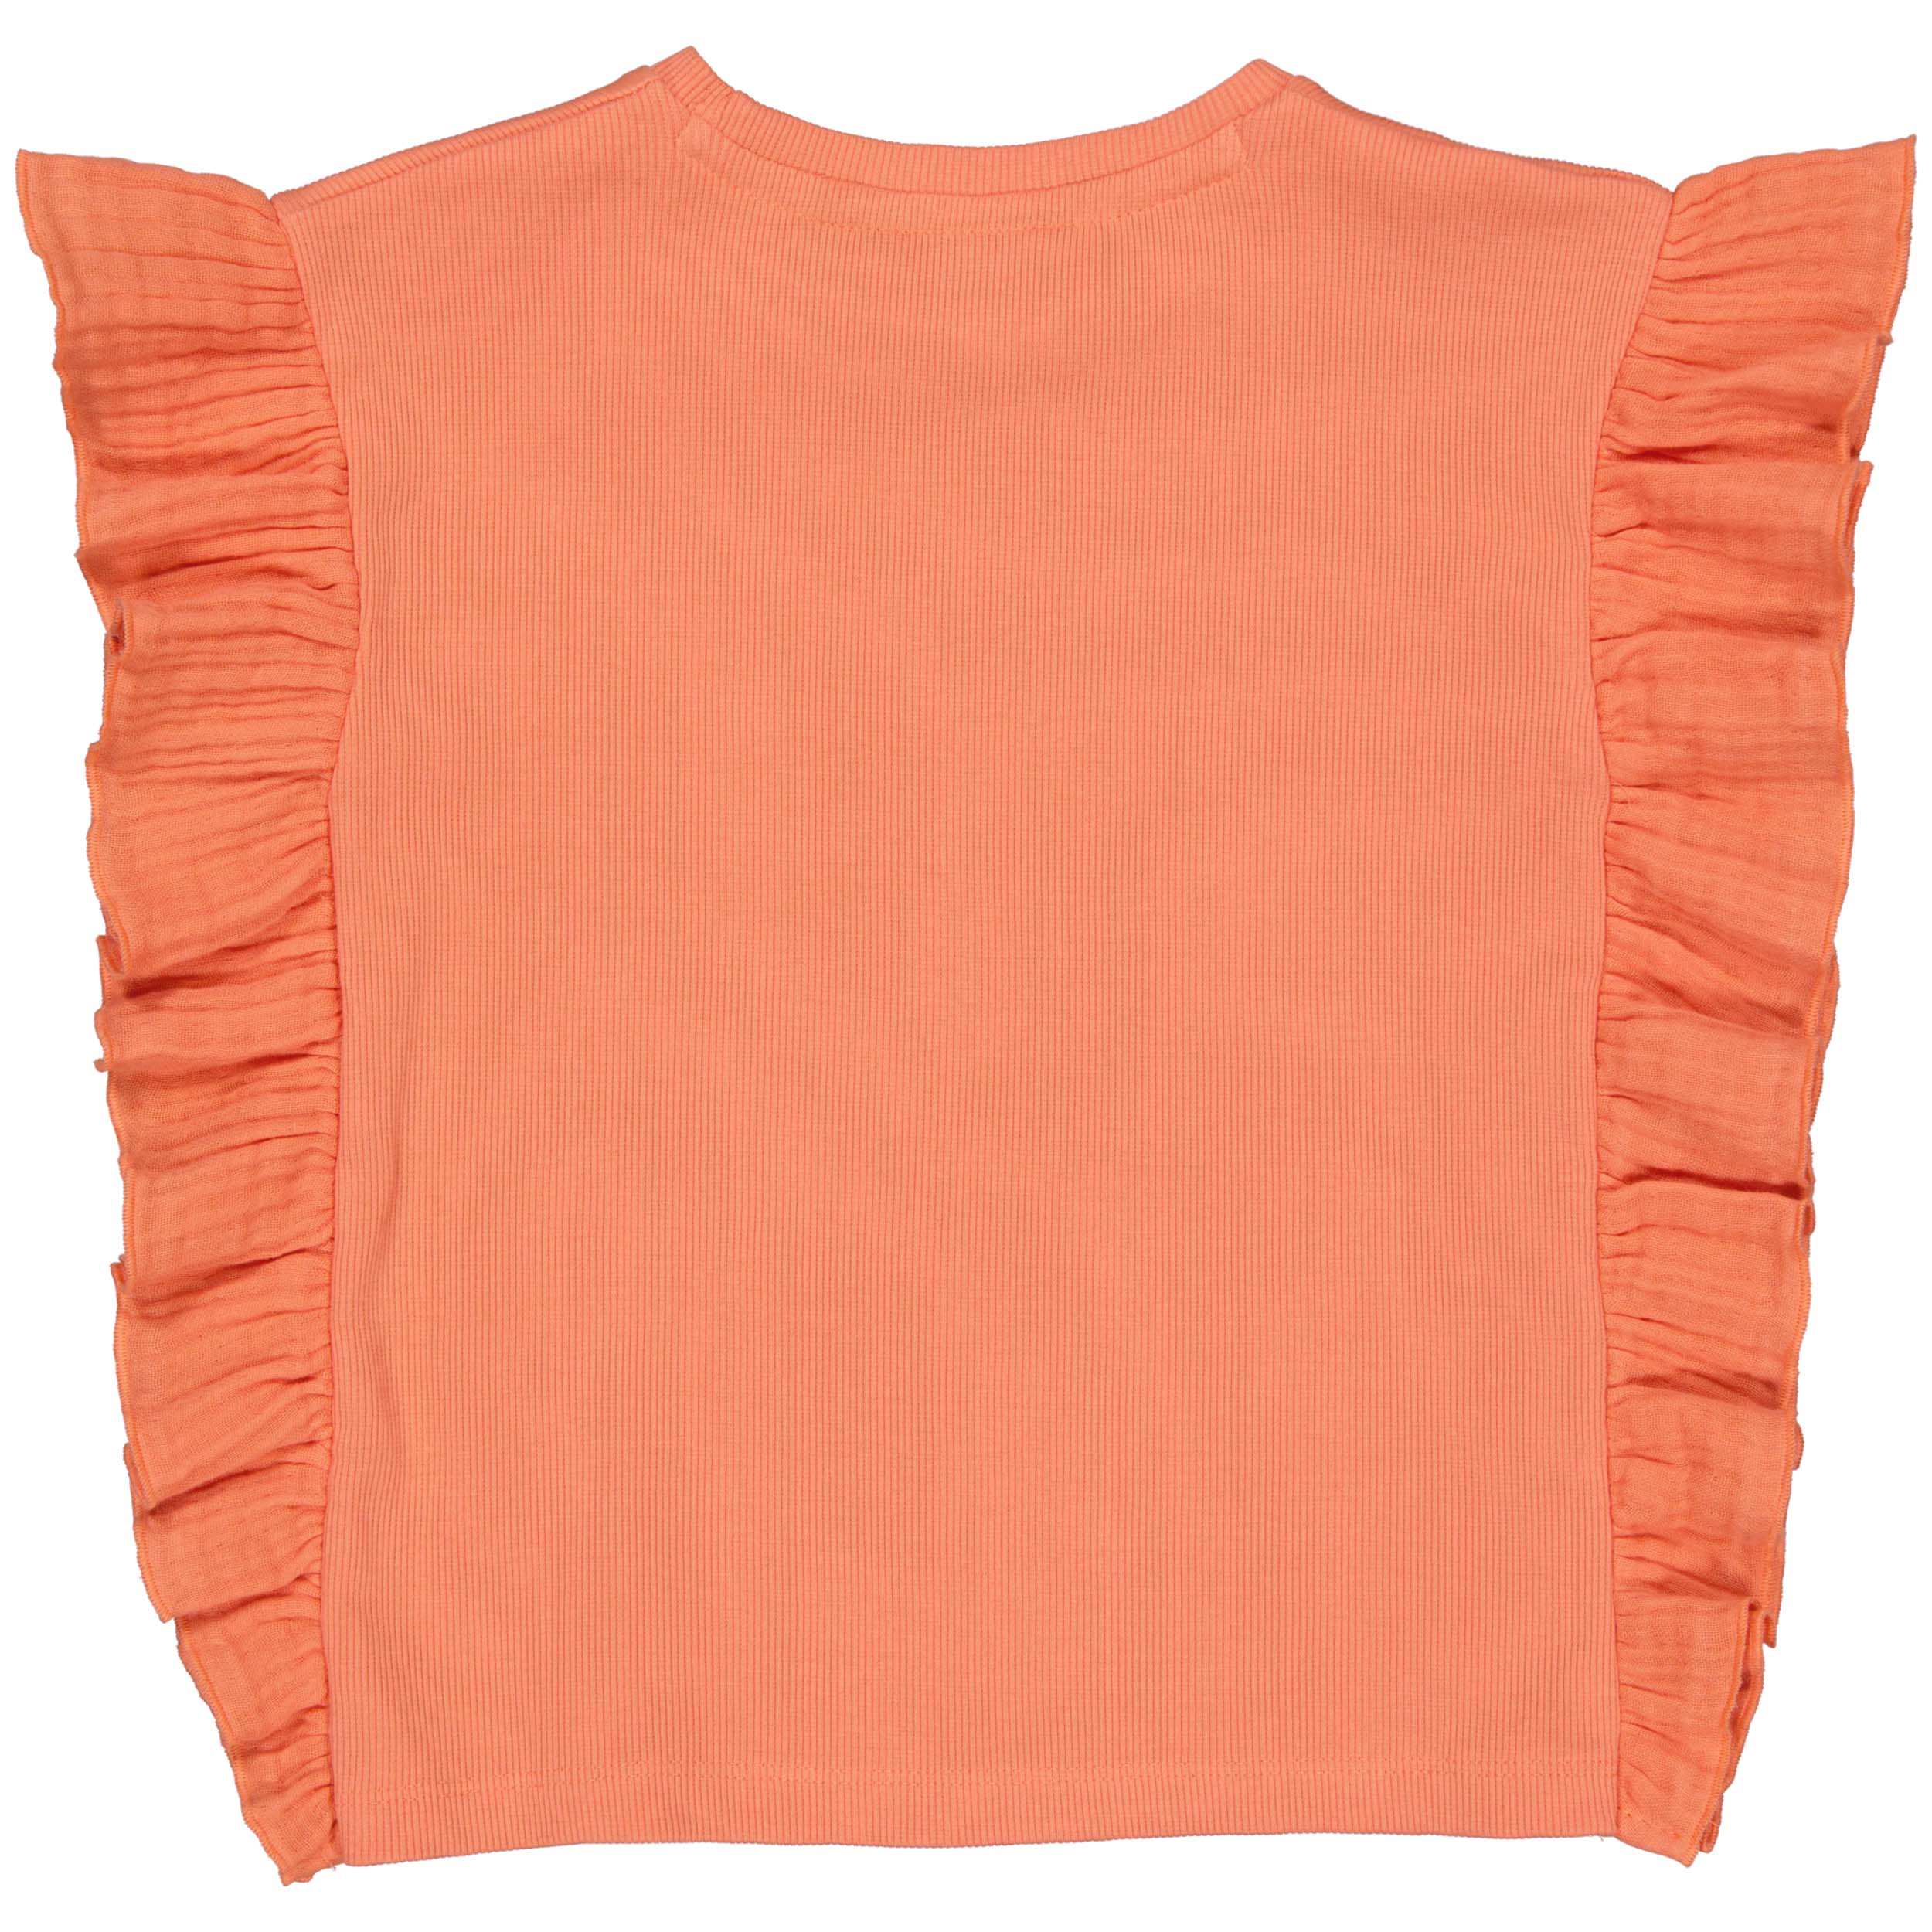 Meisjes Top LELONIE van Levv in de kleur Peach Soft in maat 128.